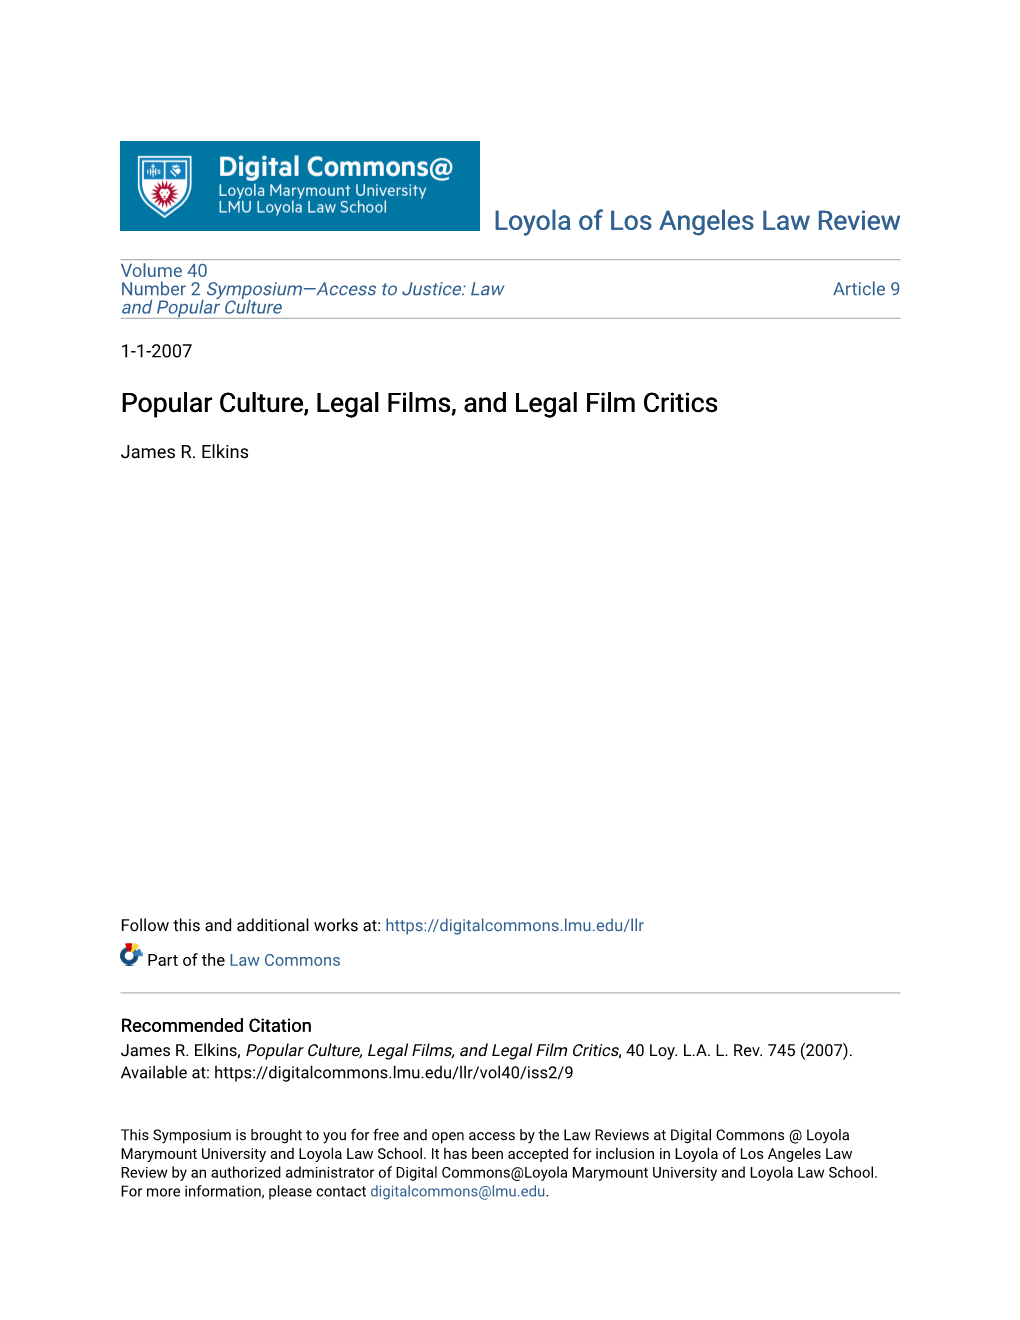 Popular Culture, Legal Films, and Legal Film Critics